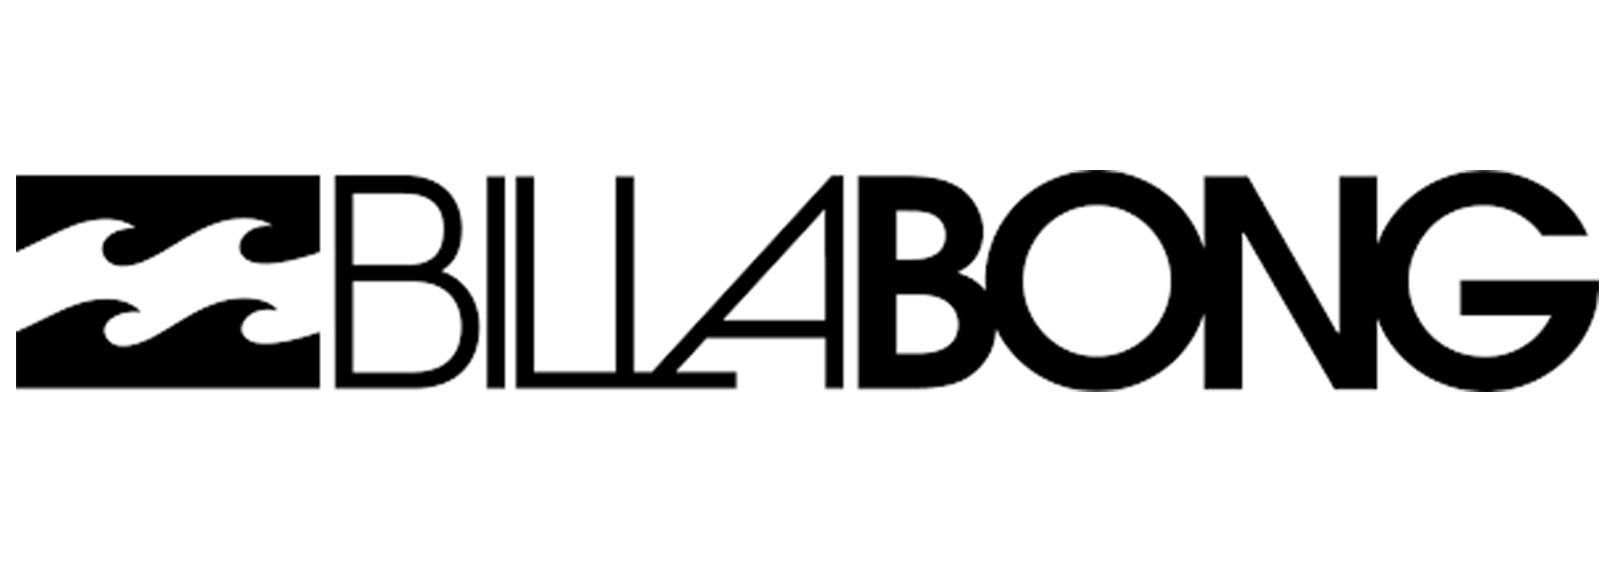 BIllabong logo